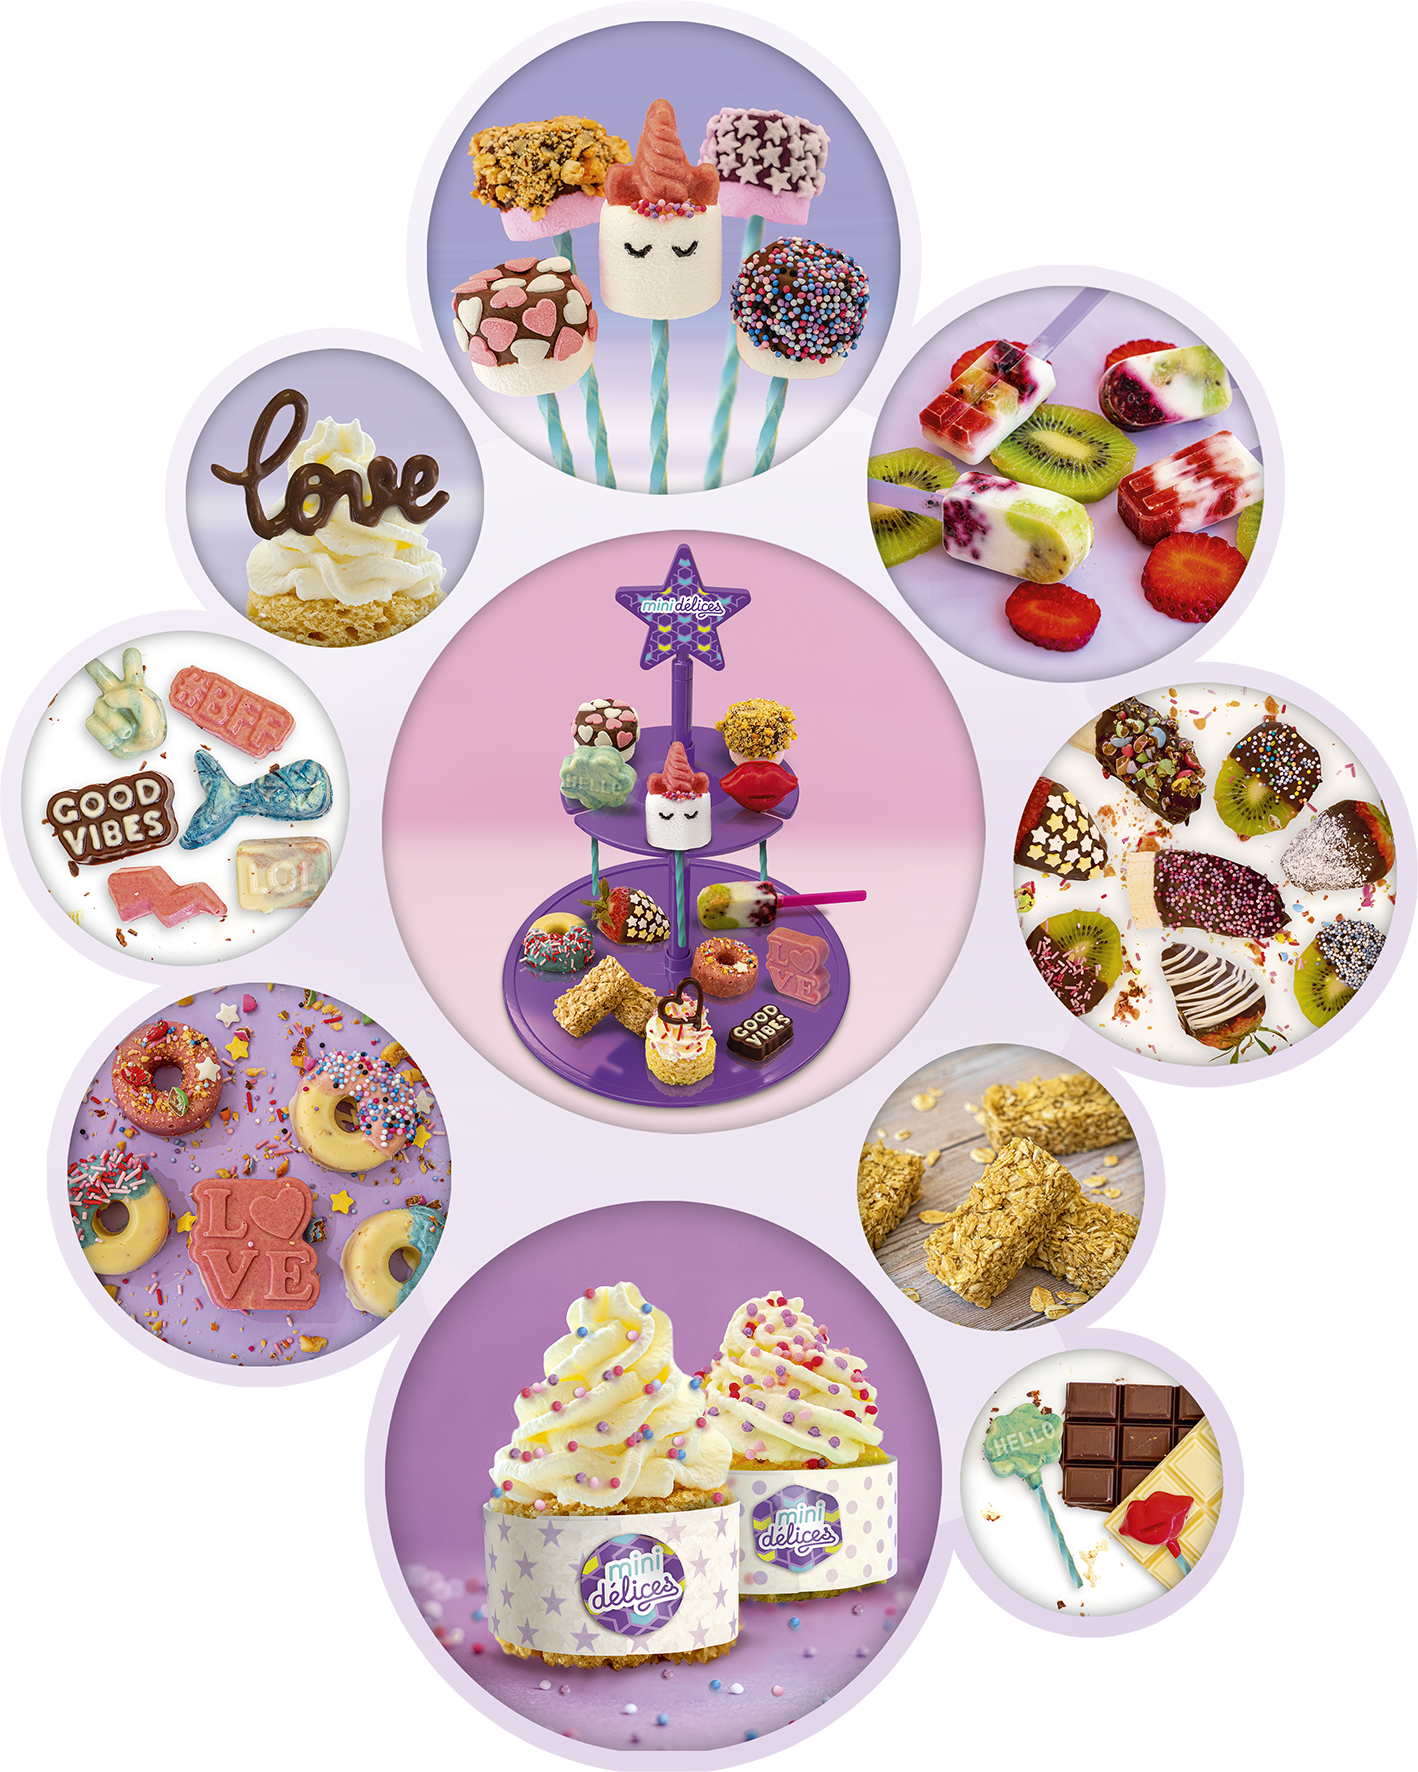 LANSAY Mini délices création cupcakes pas cher 